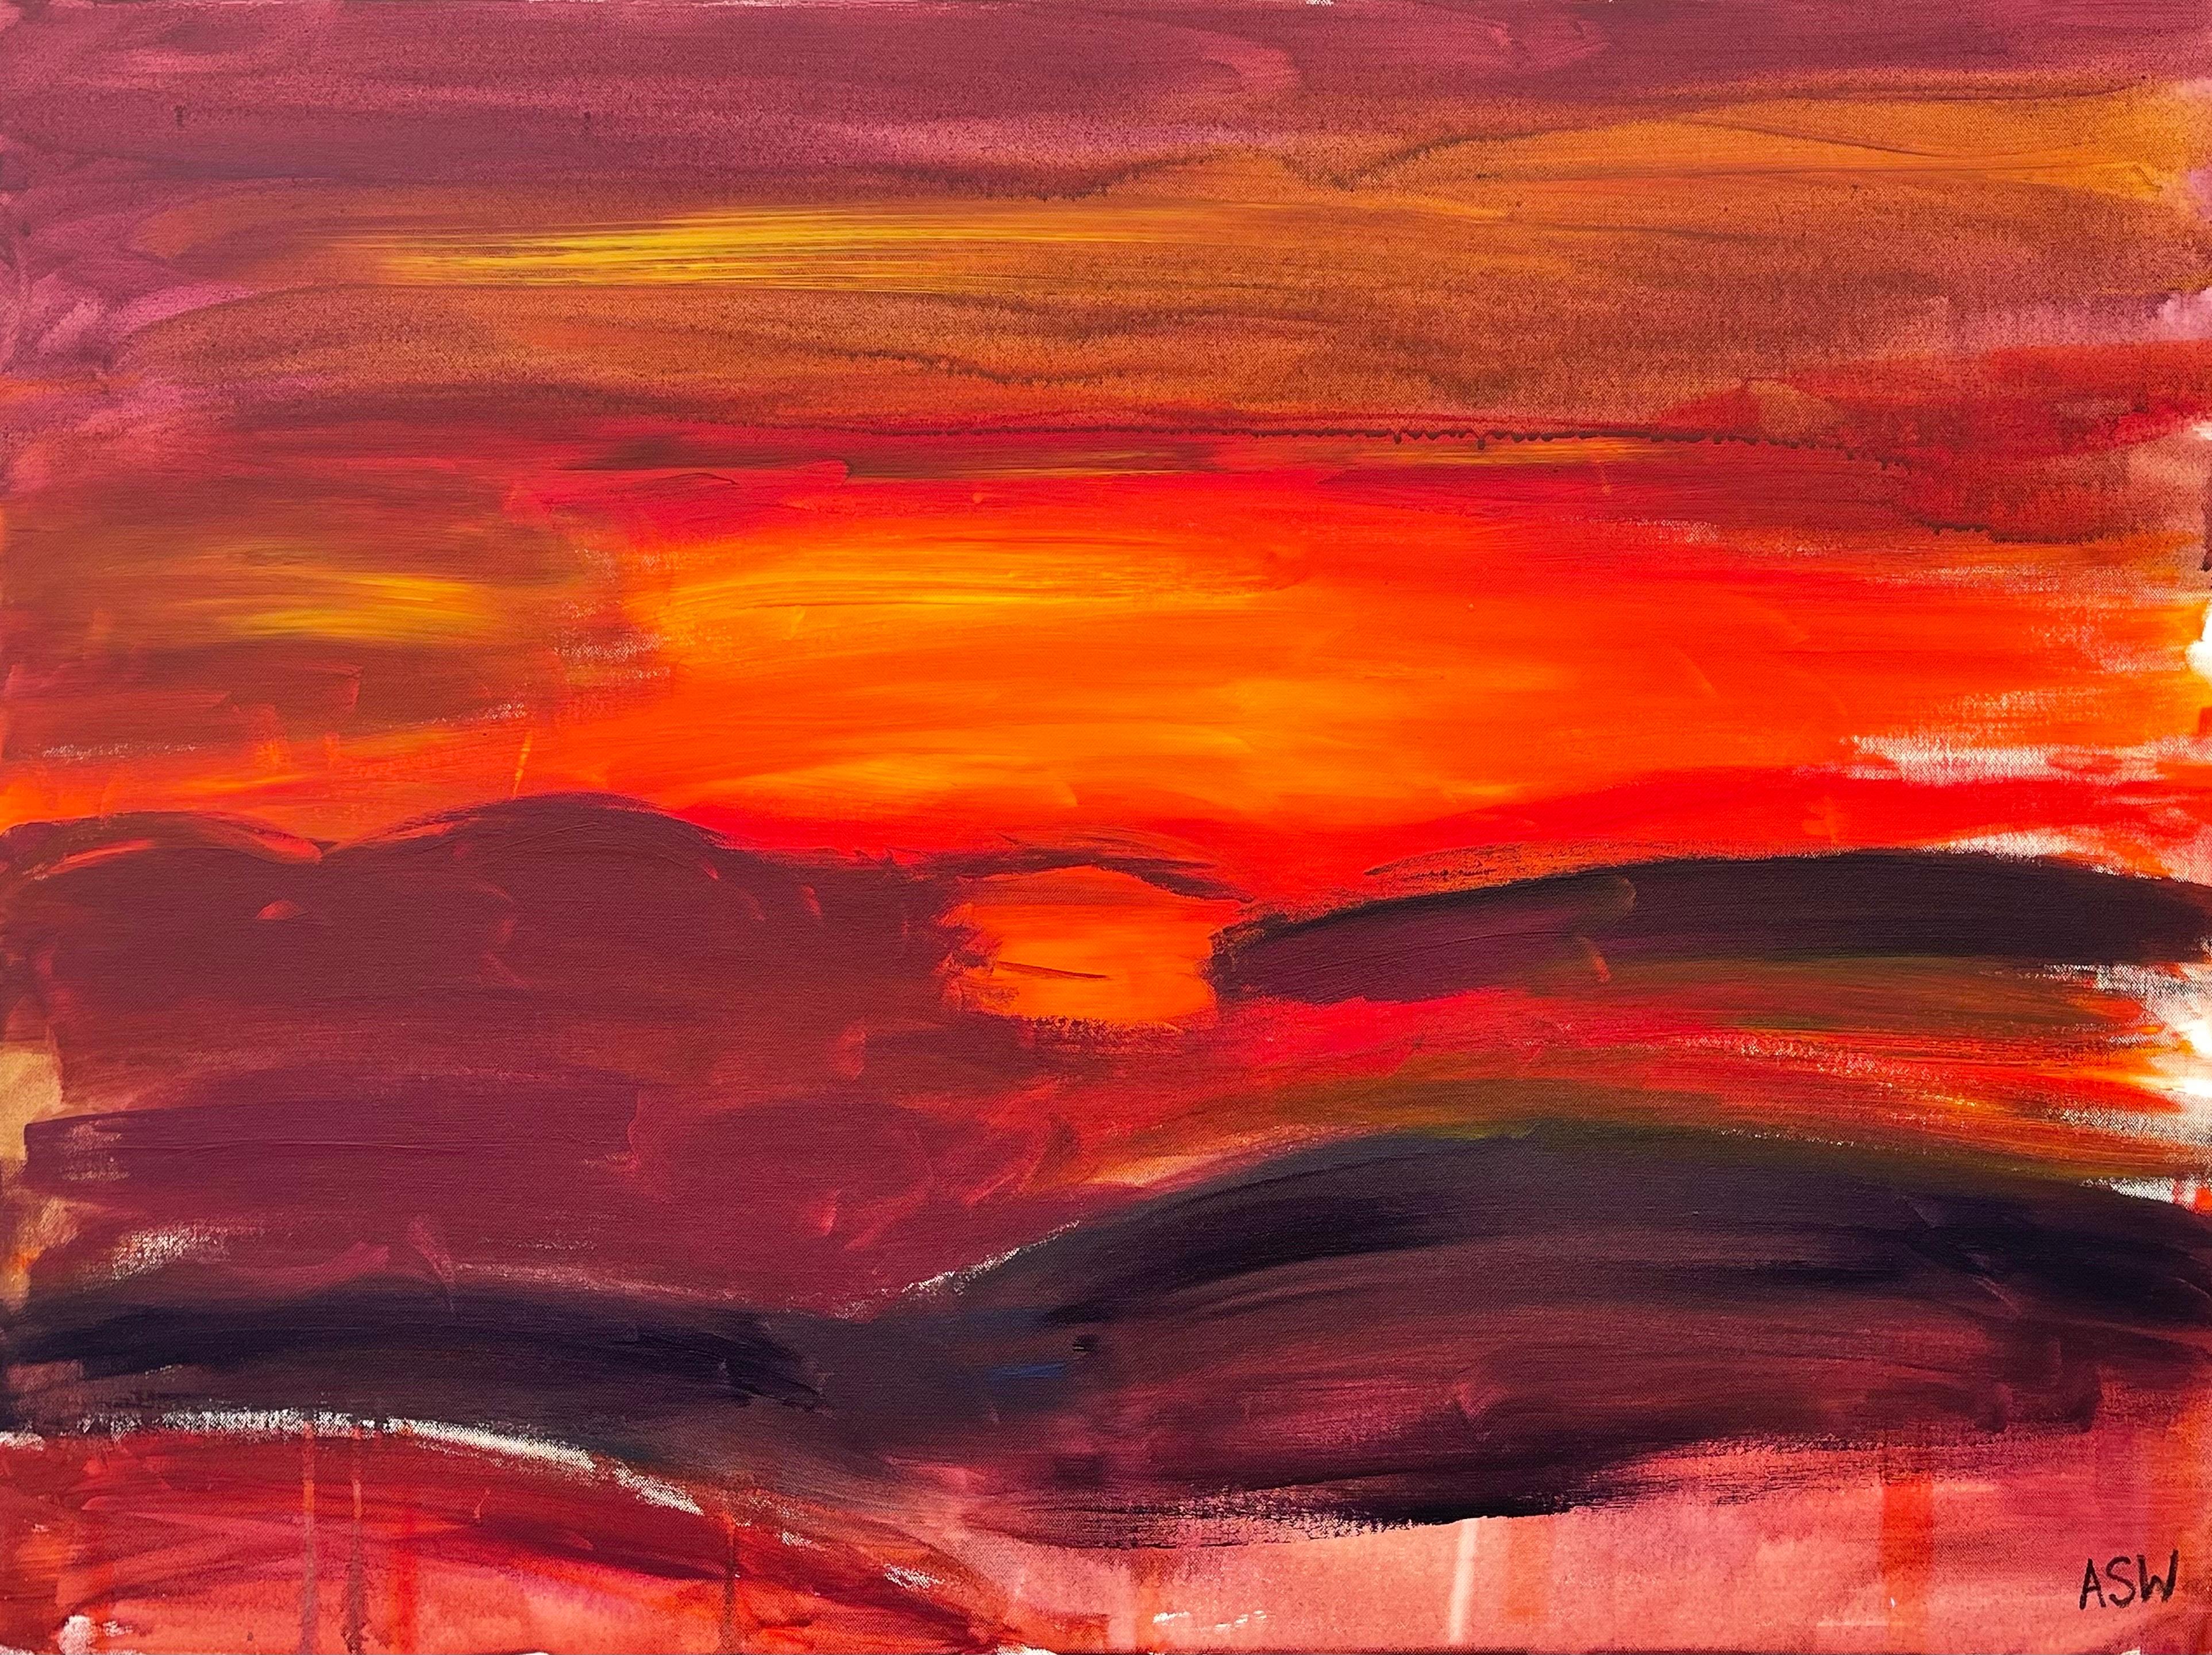 Abstraktes expressionistisches Gemälde in Orange und Rot - ein seltenes Frühwerk der führenden britischen Urban Artist Angela Wakefield. Dieses kühne, farbenfrohe Kunstwerk mit dem Titel 